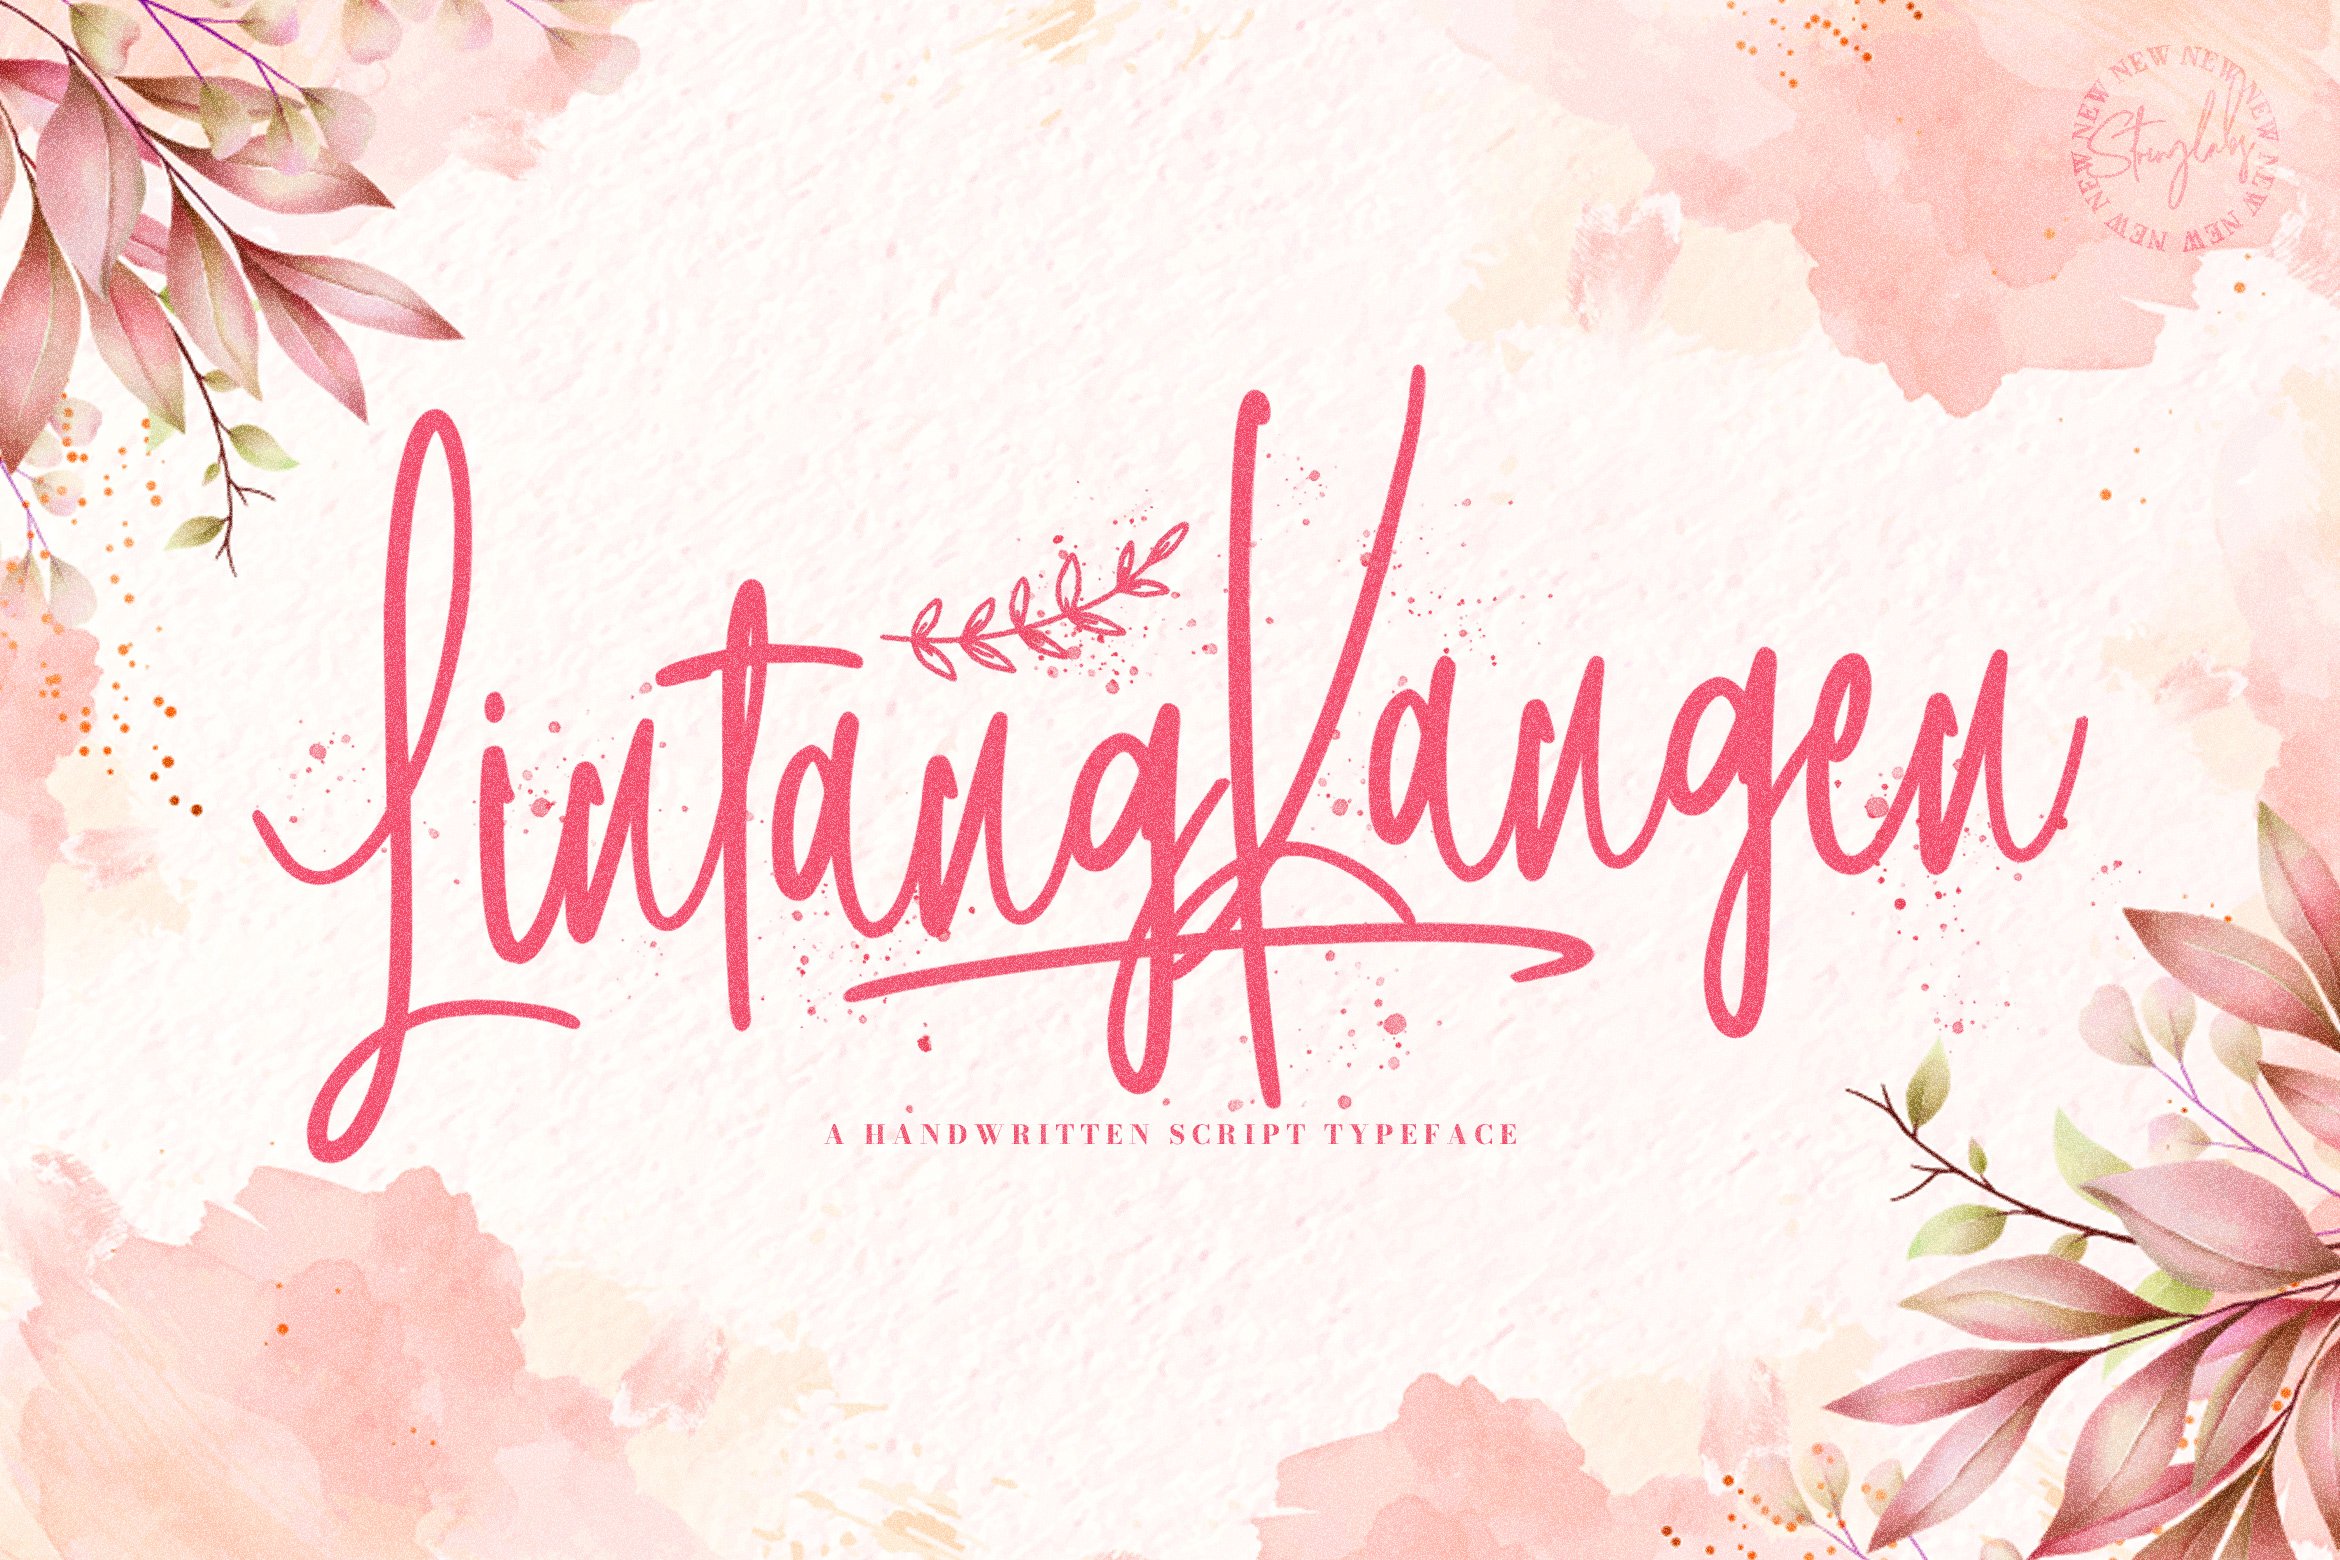 Lintang Kangen - Handwritten Font cover image.